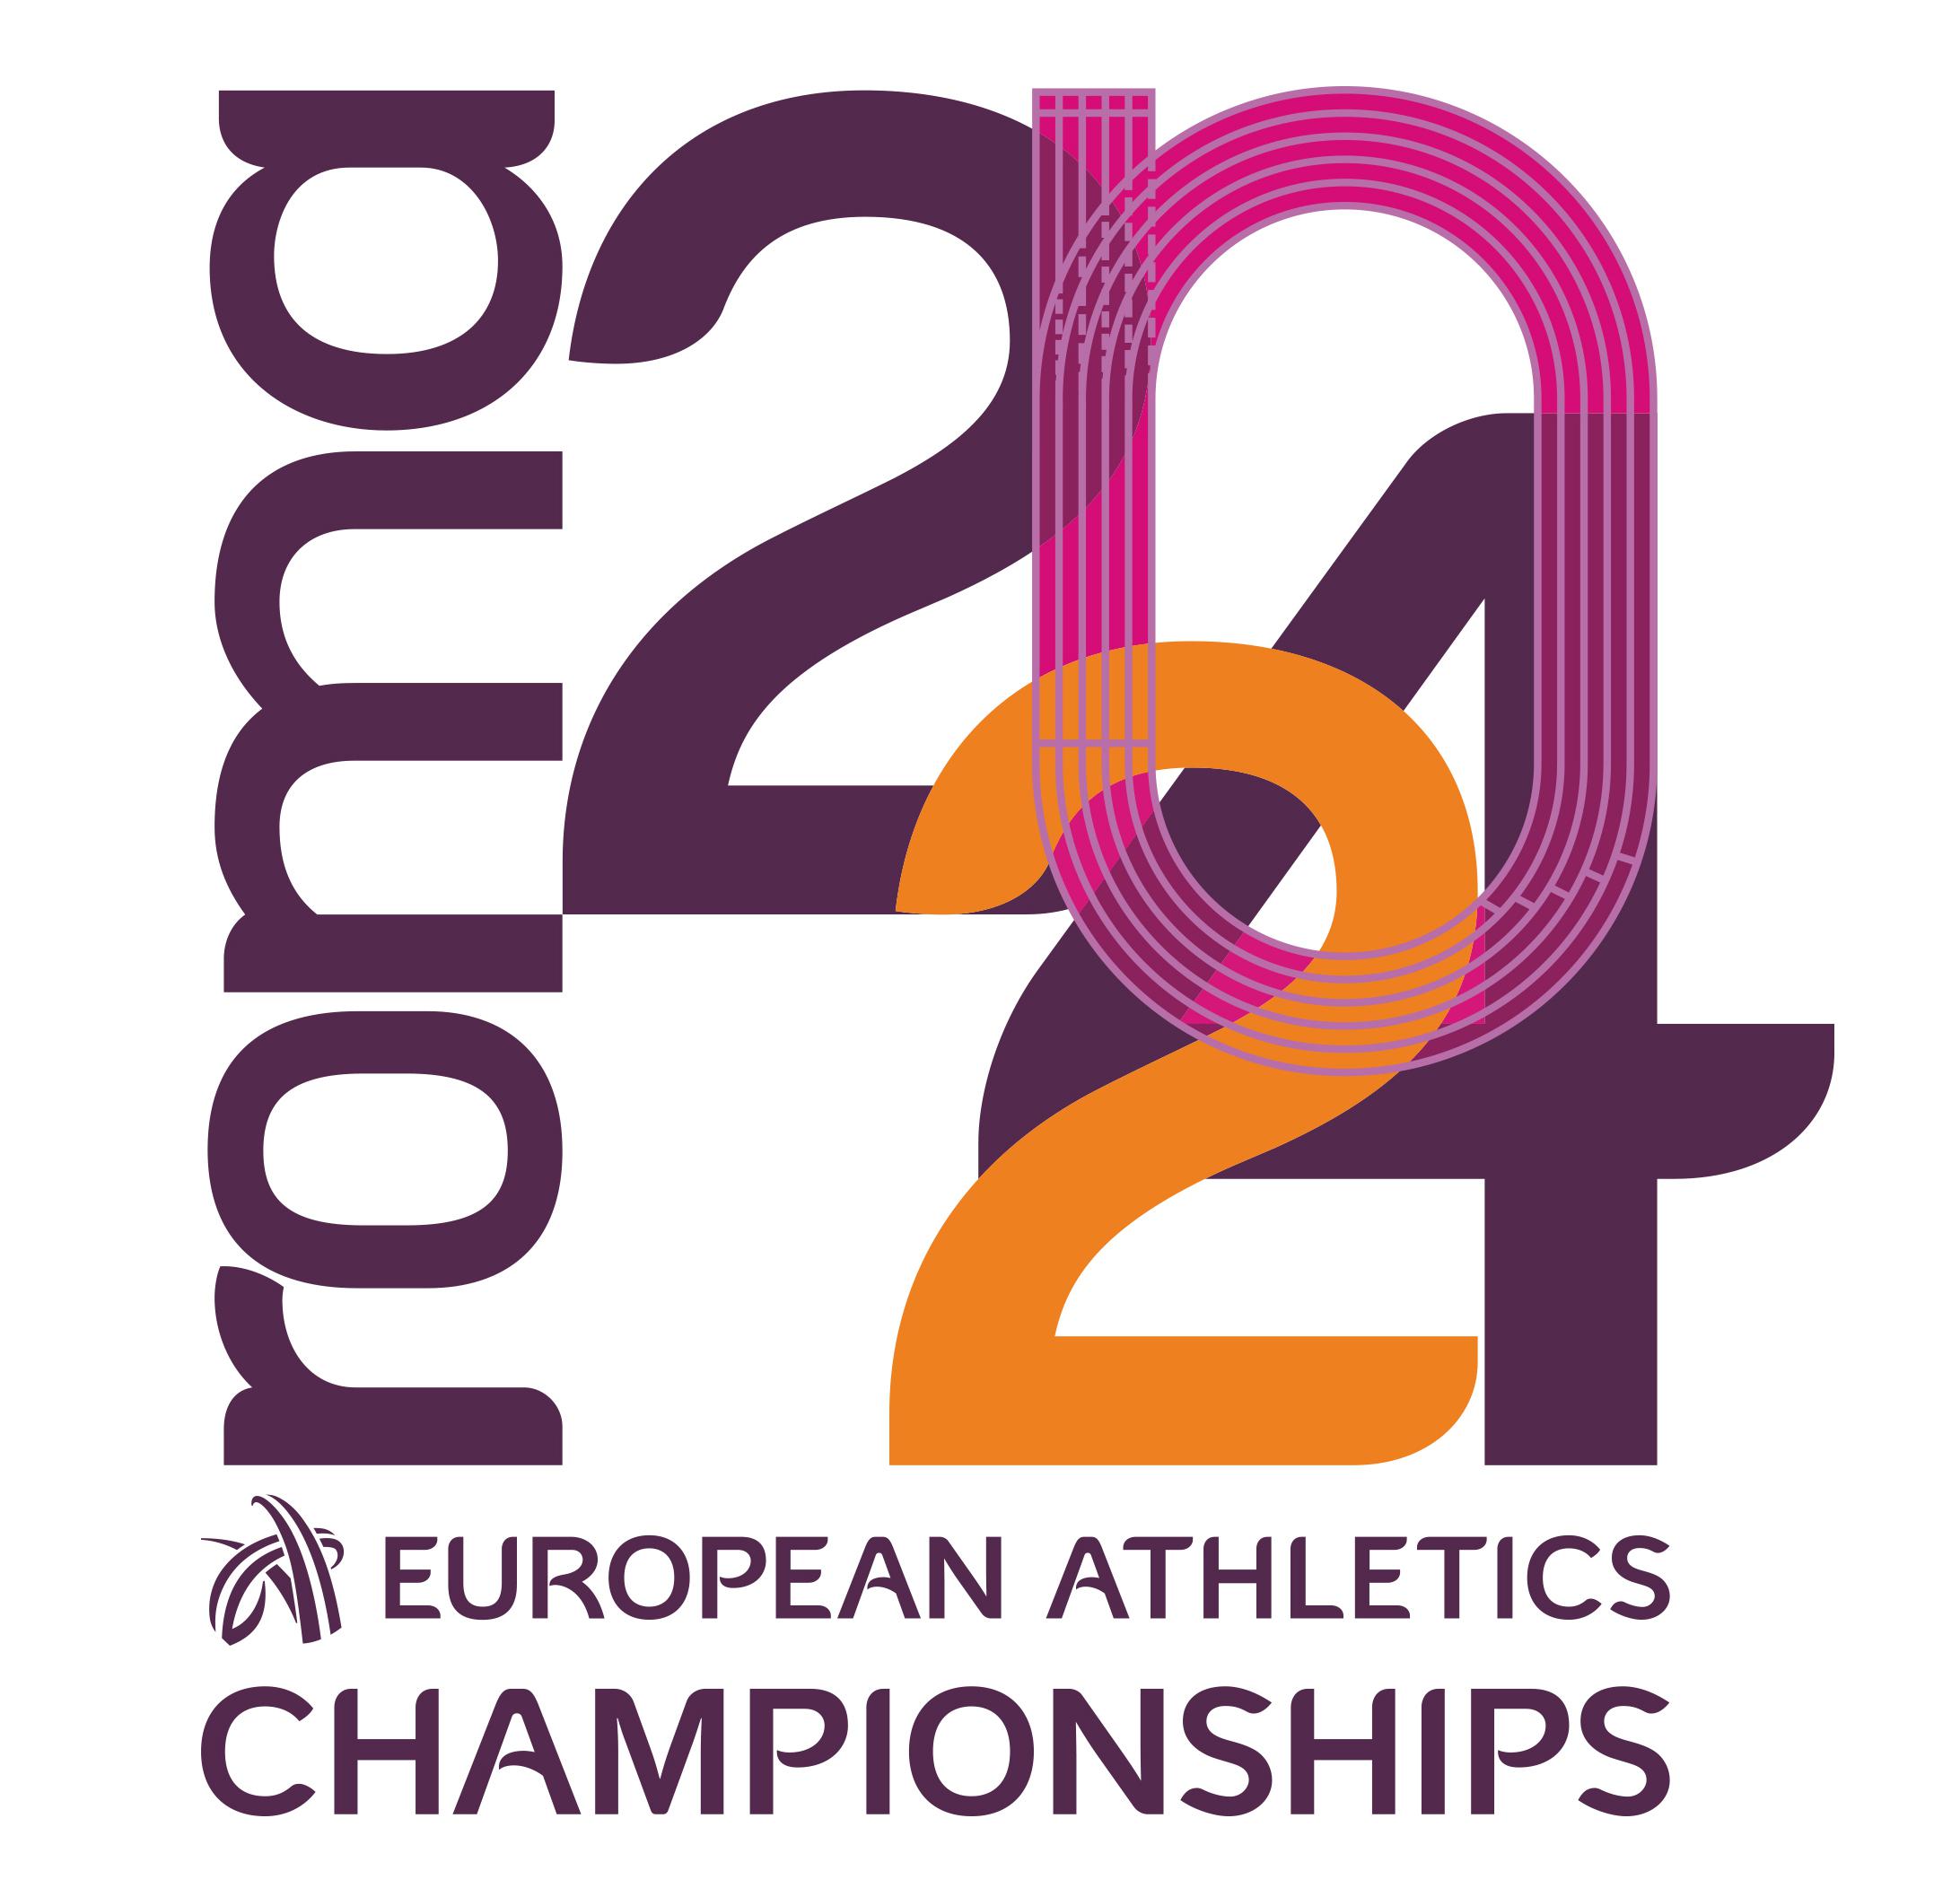 Championnats d’Europe d’athlétisme Rome 2024, le logo officiel est présenté